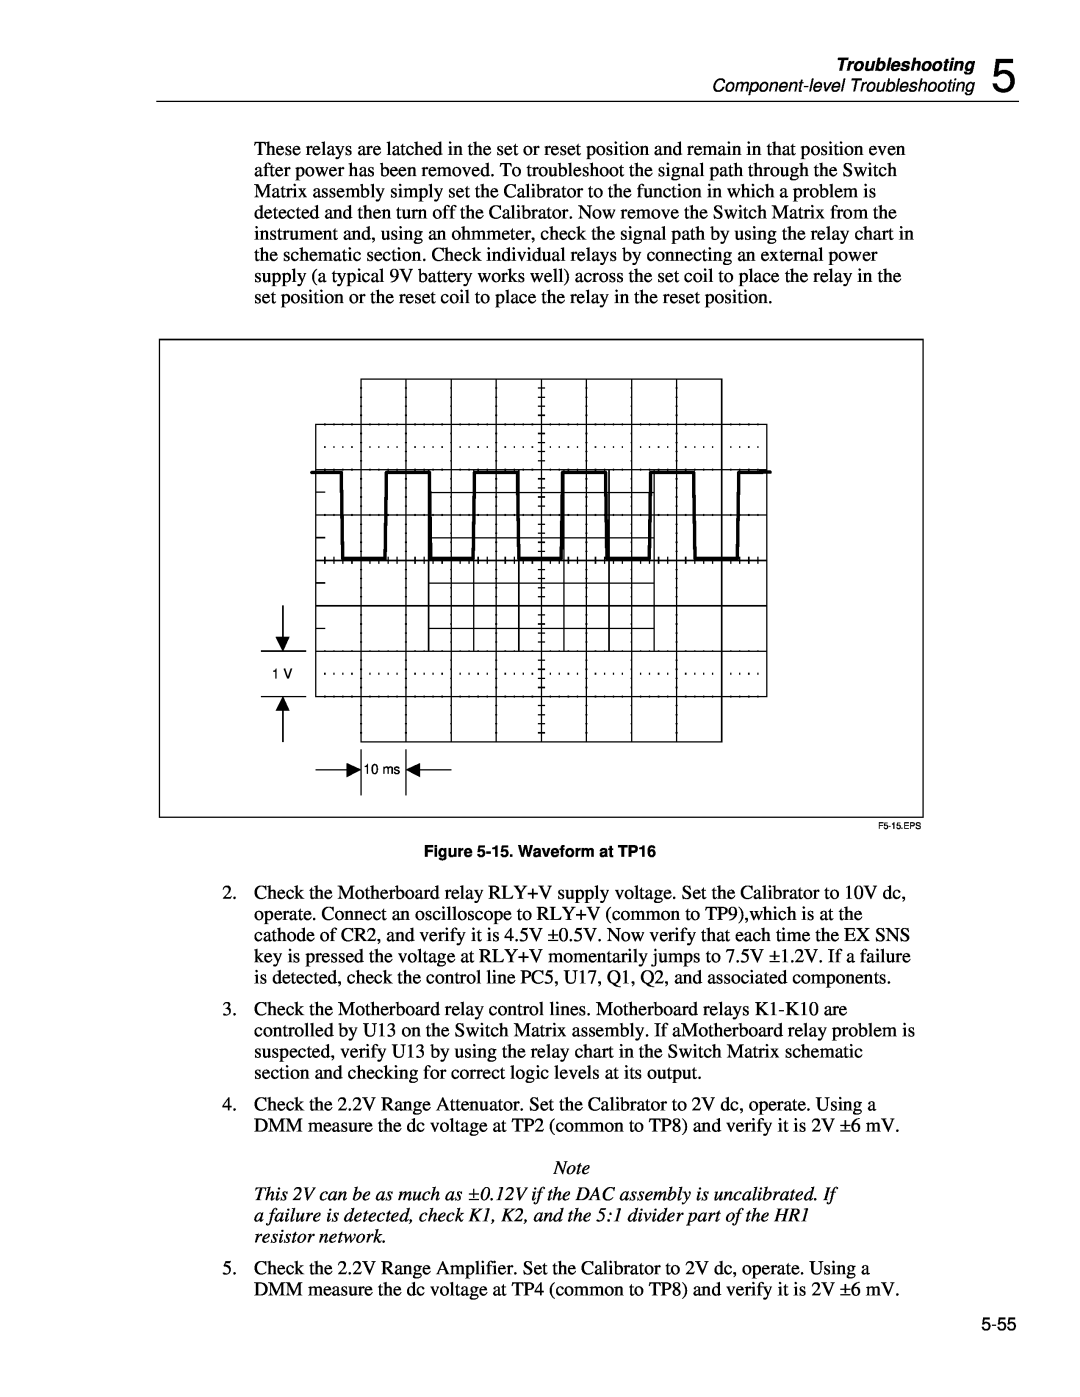 Fluke 5720A service manual 15. Waveform at TP16, F5-15.EPS 